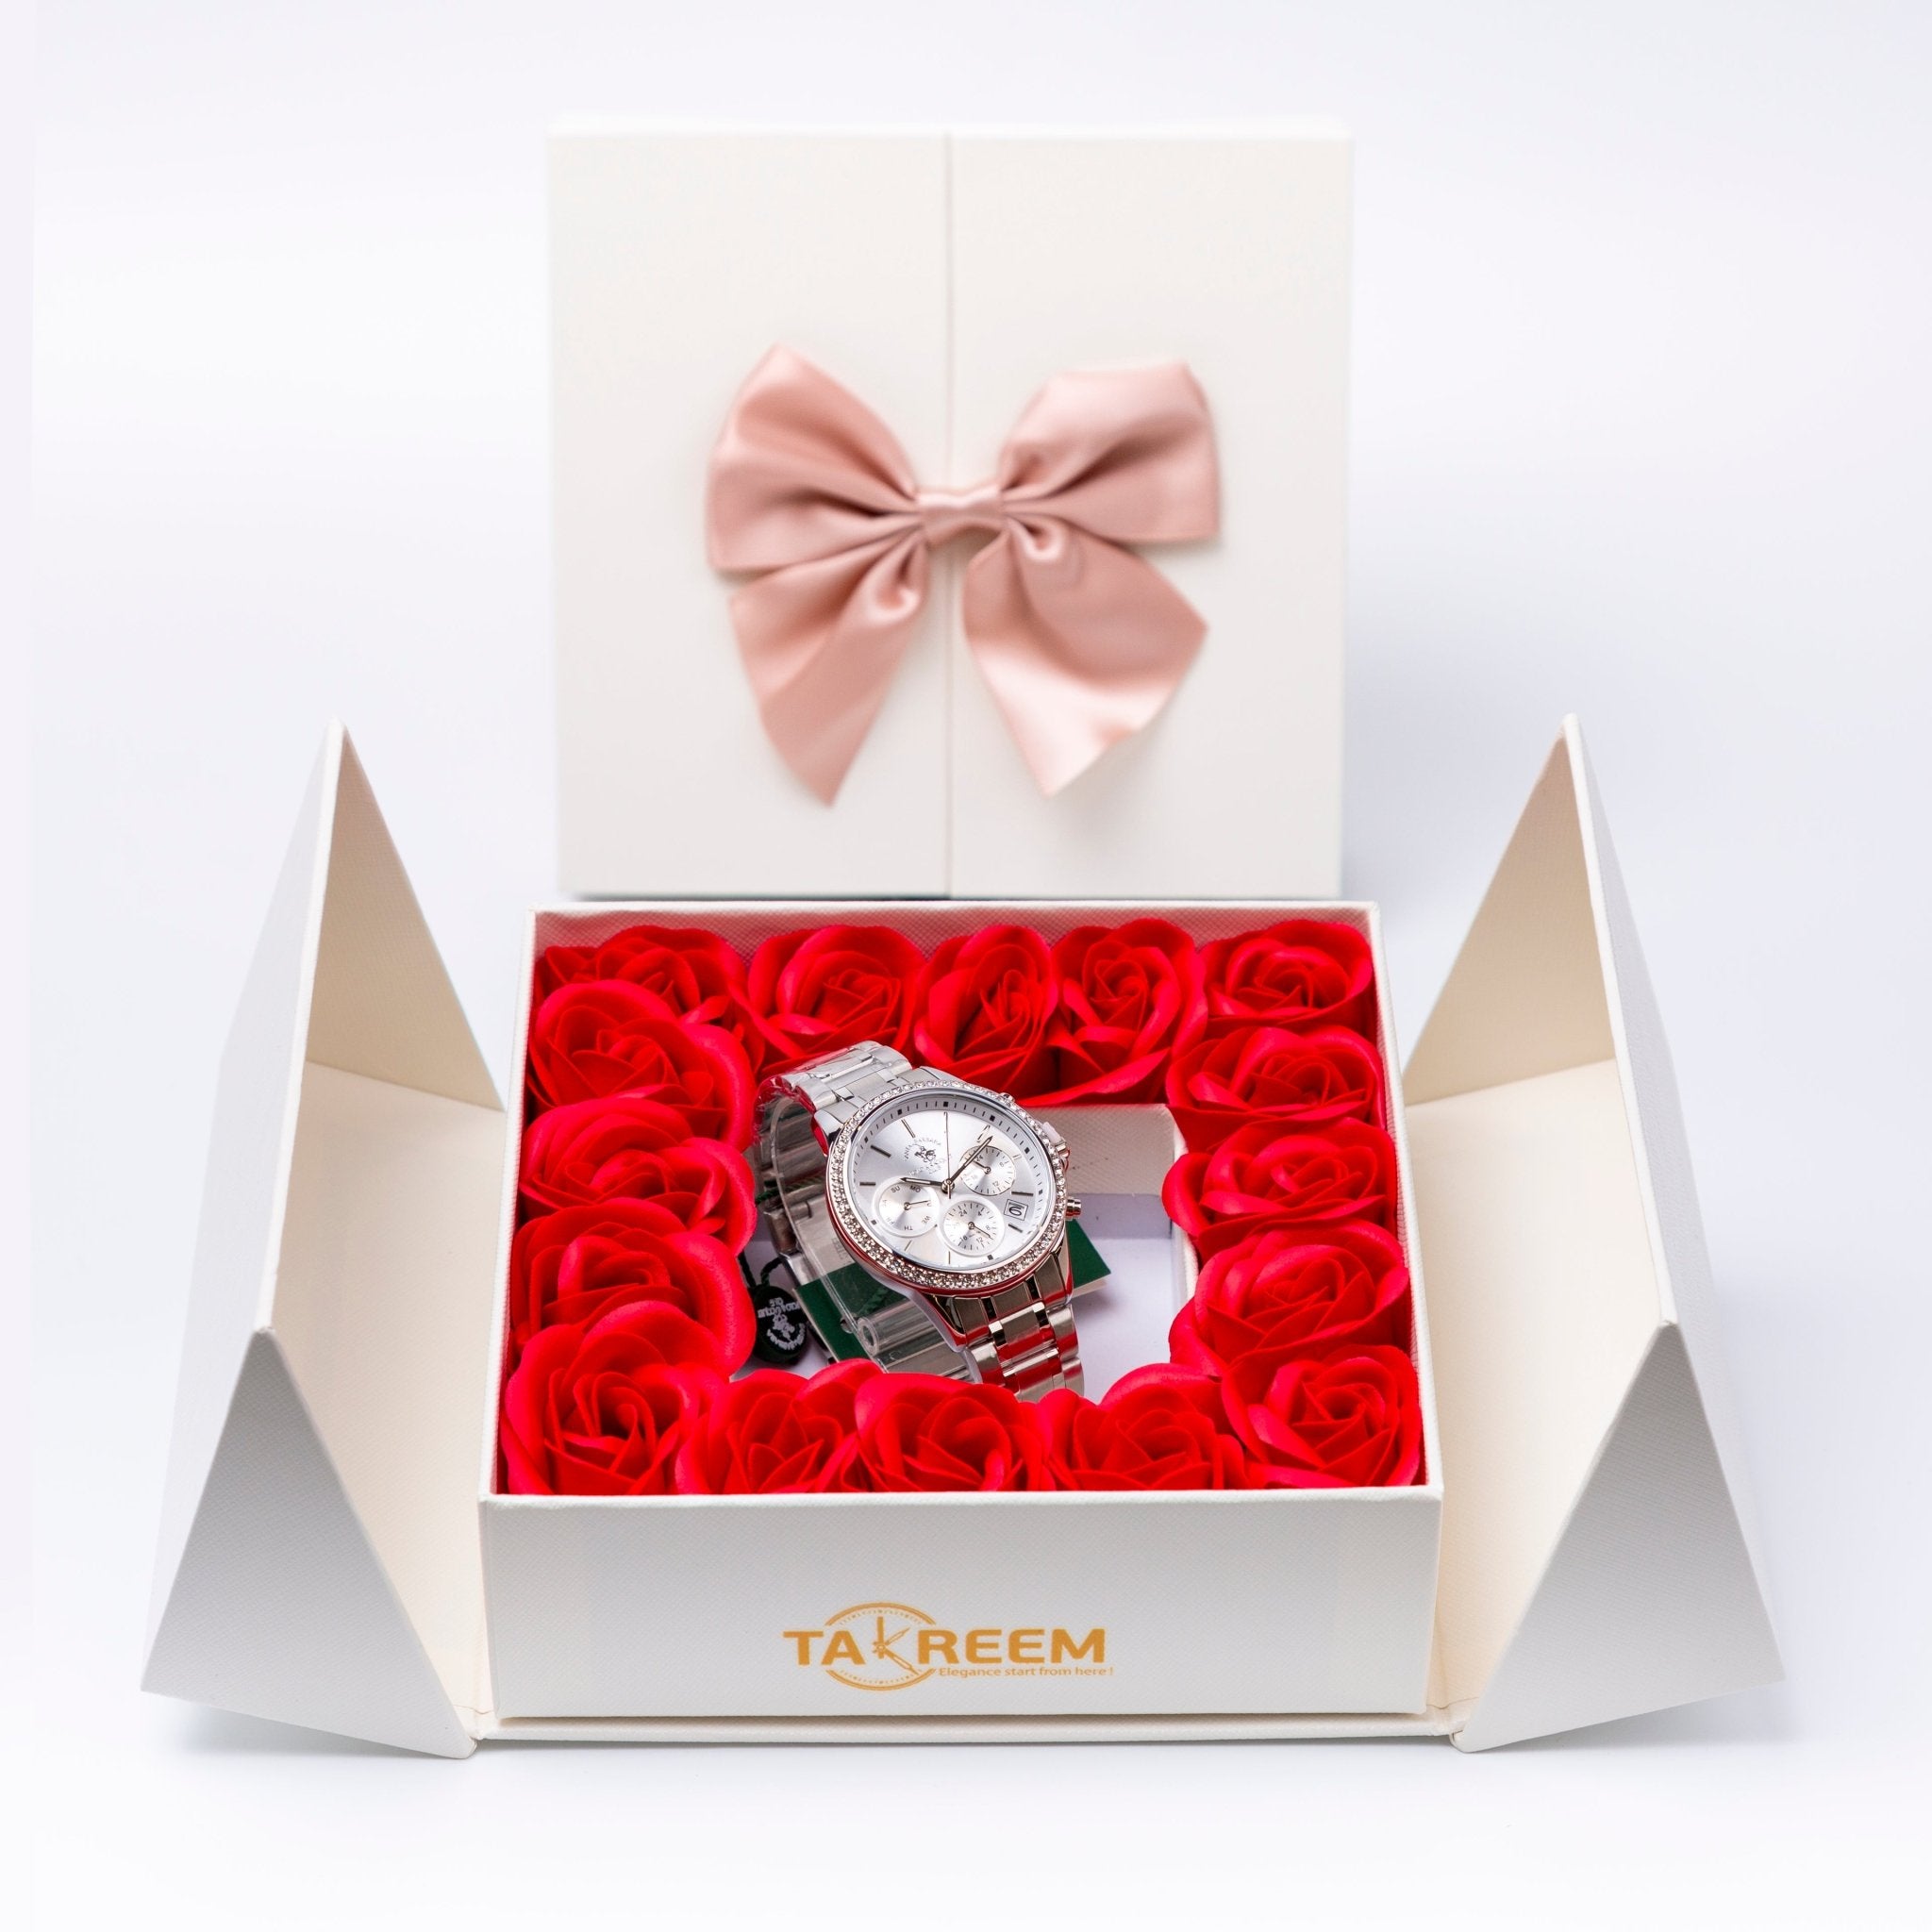 Flower Box - Gift For Women 21 - #shoFlower Box - Gift For Women 21p_name#Flower Box - Gift For Women 21Gift Boxes & TinsTakreemTakreem.joWomenWatchFlower Box - Gift For Women 21 - Takreem.jo